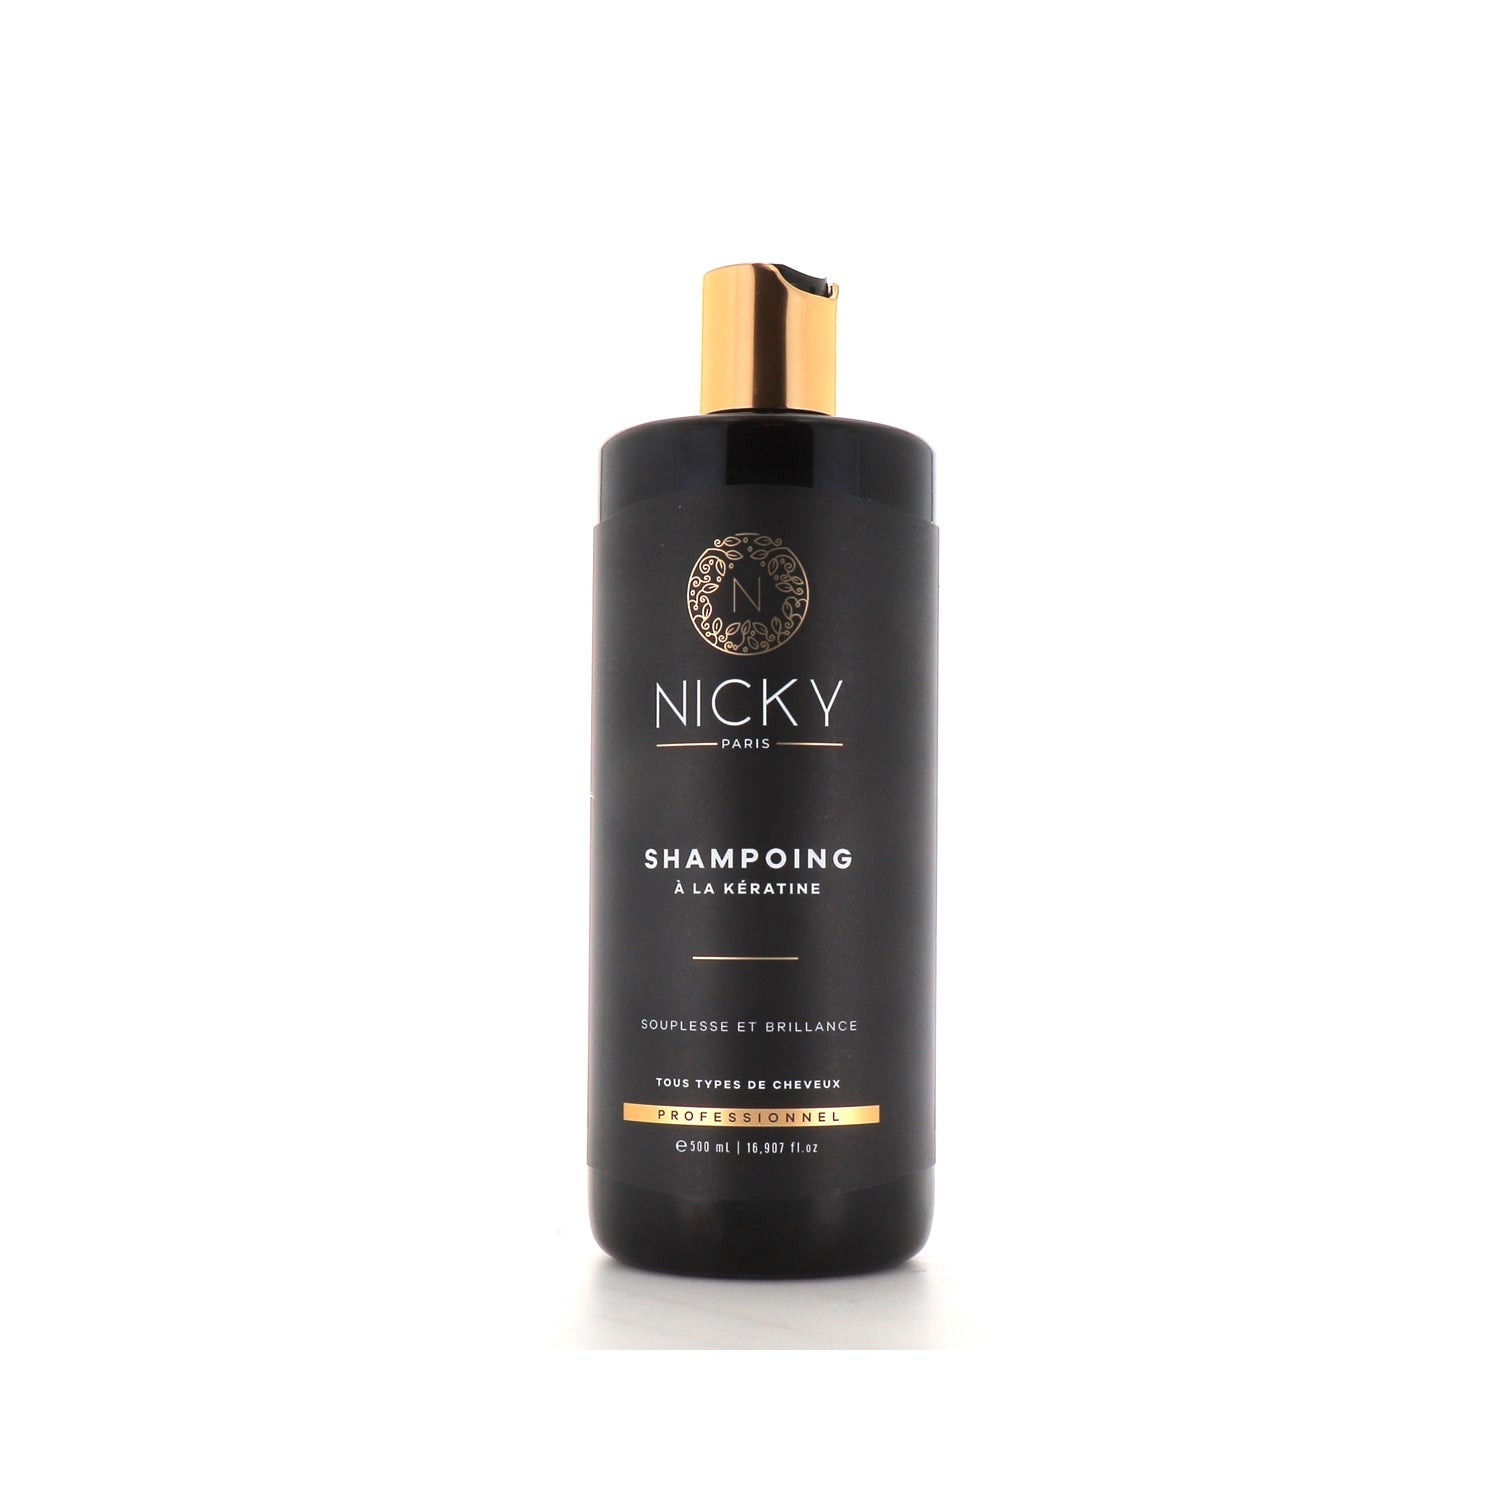 Nicky Paris shampoing huile d'amla - Tous types de cheveux